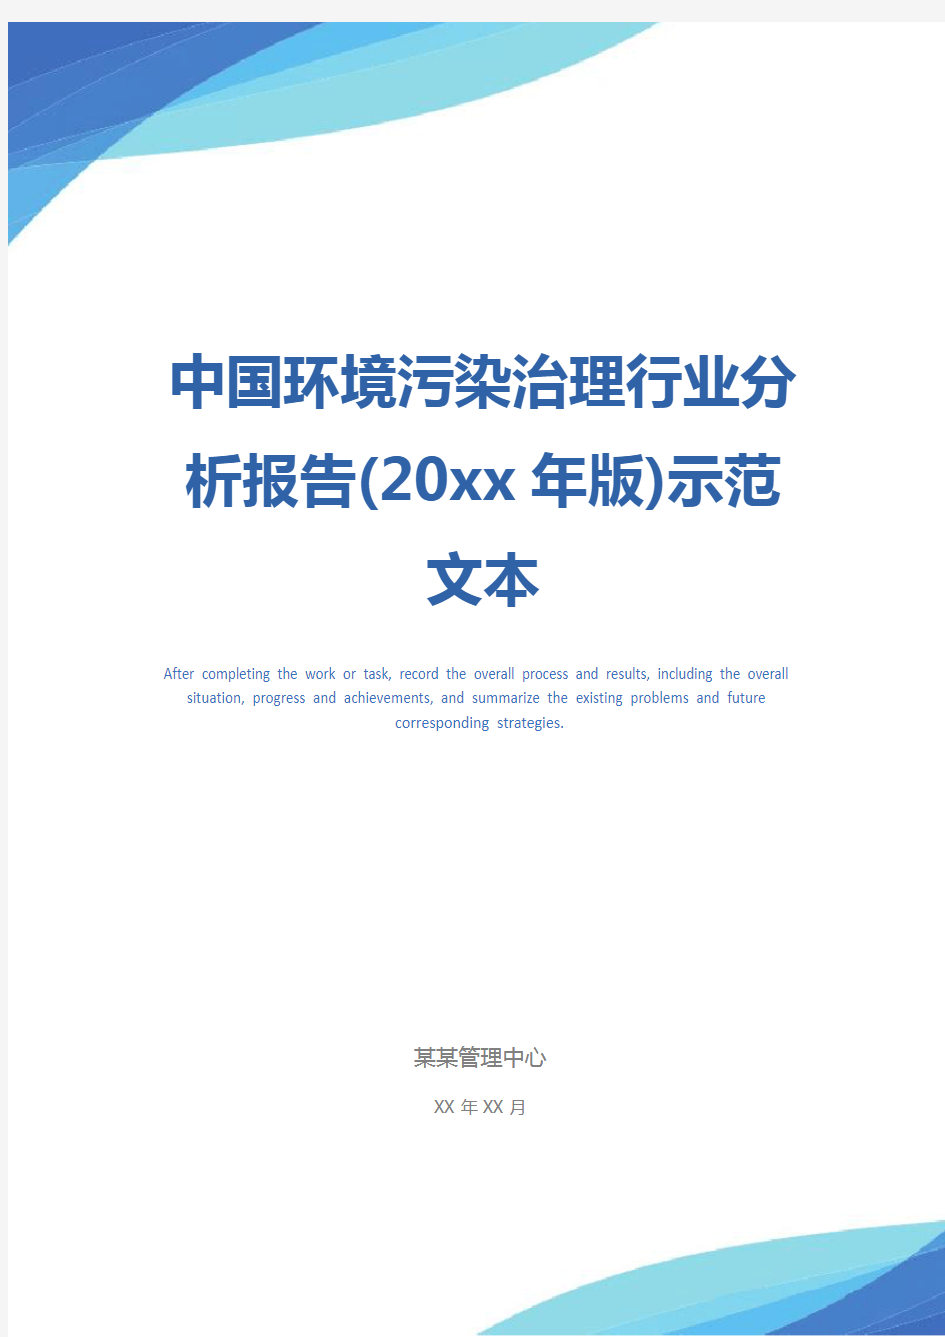 中国环境污染治理行业分析报告(20xx年版)示范文本